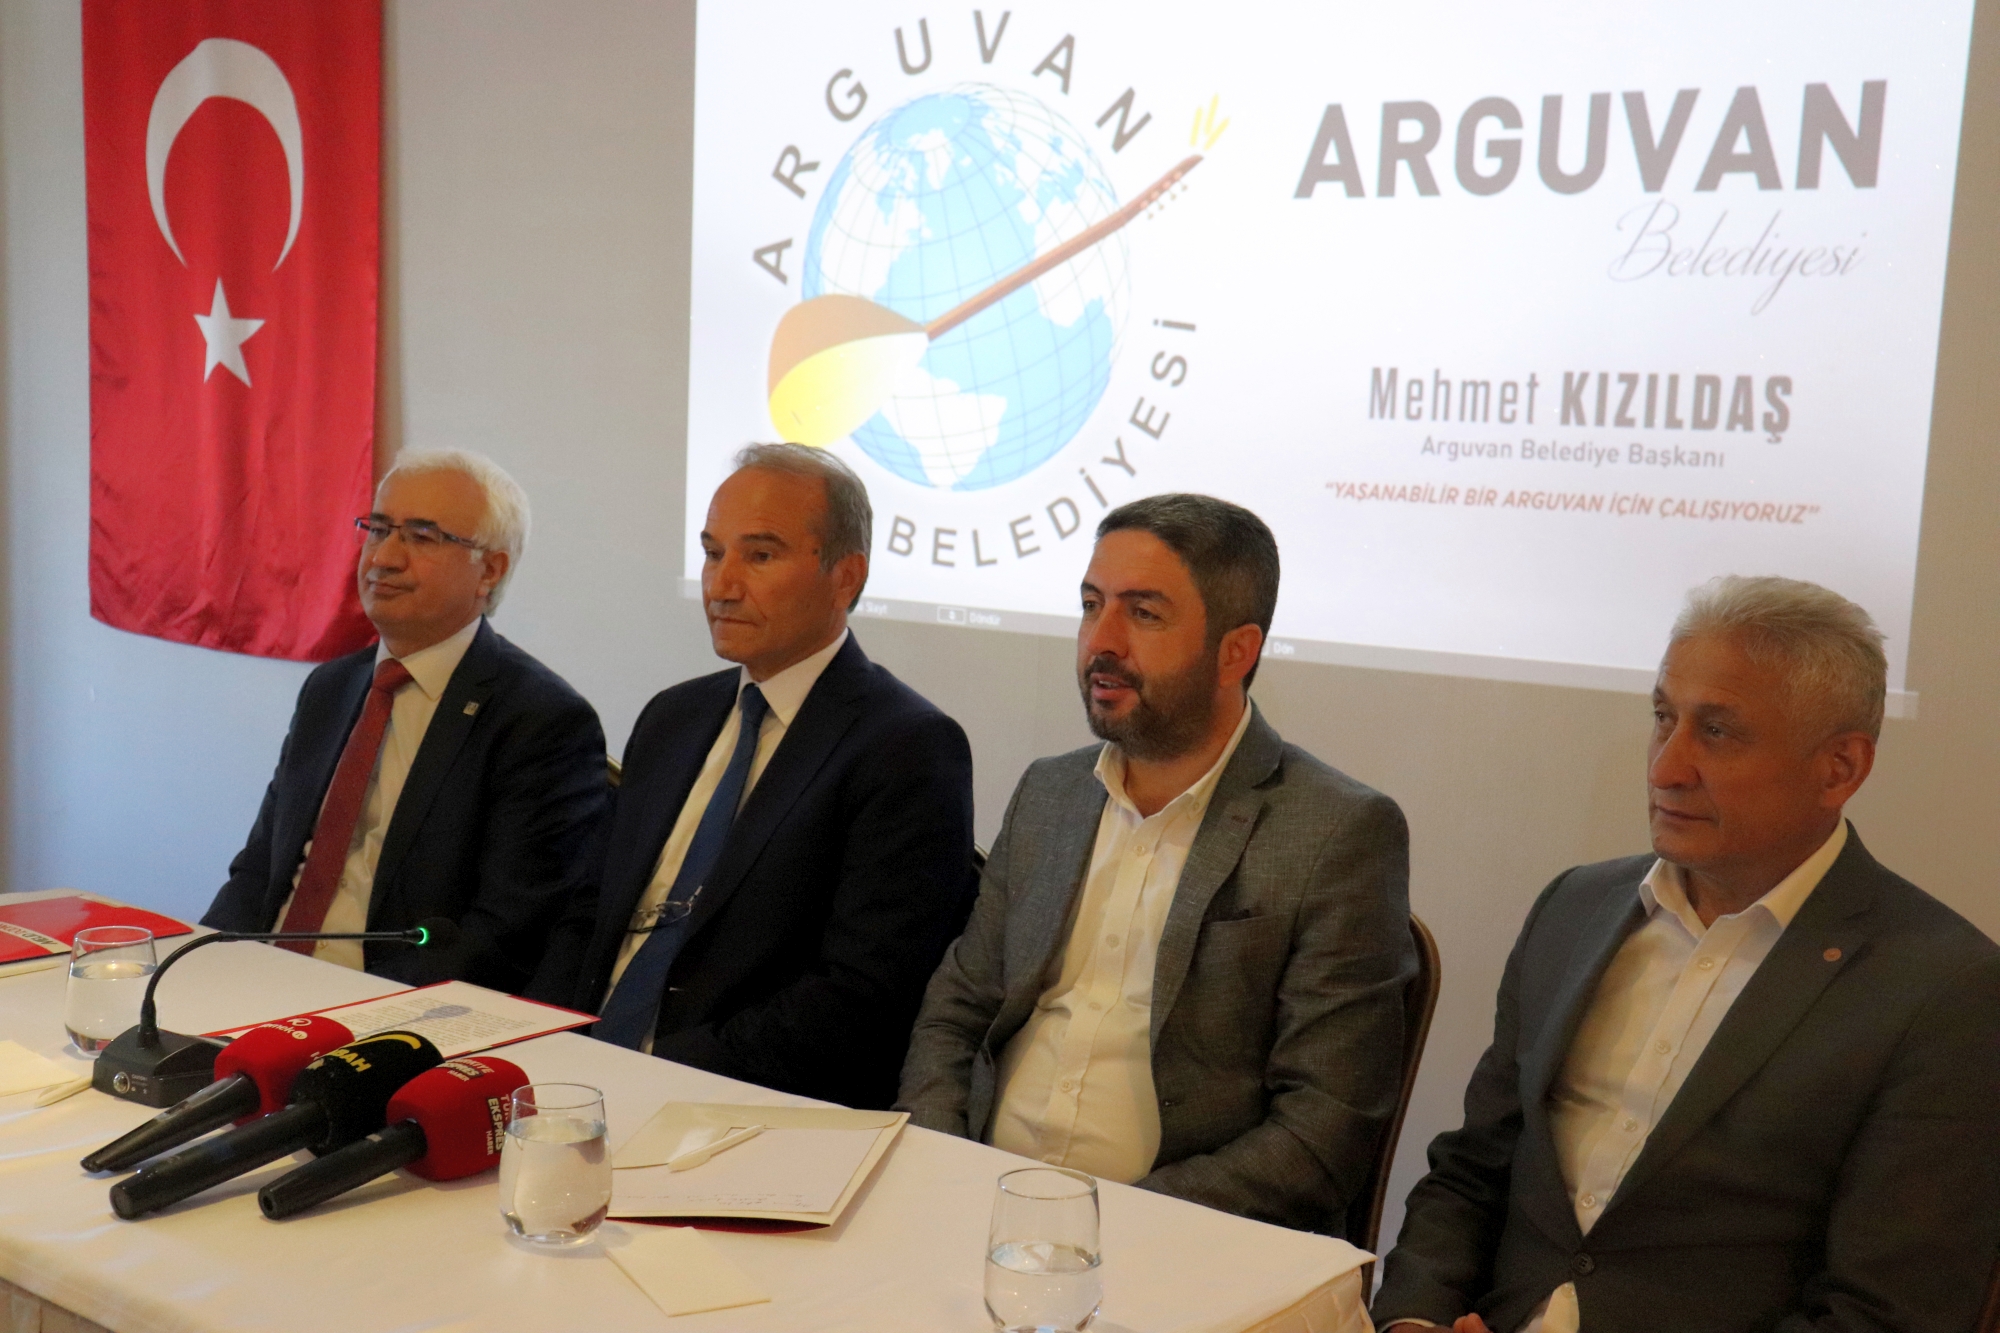 Arguvan Belediye Başkanı Mehmet Kızıldaş, pandemi nedeniyle 2 yıldır gerçekleştirilemeyen Türkü Festivali’nin bu yıl düzenleneceğini açıklayarak, “15. Uluslararası Türkü Festivali, bu yıl 30-31 Temmuz tarihlerinde yapılacak” dedi.